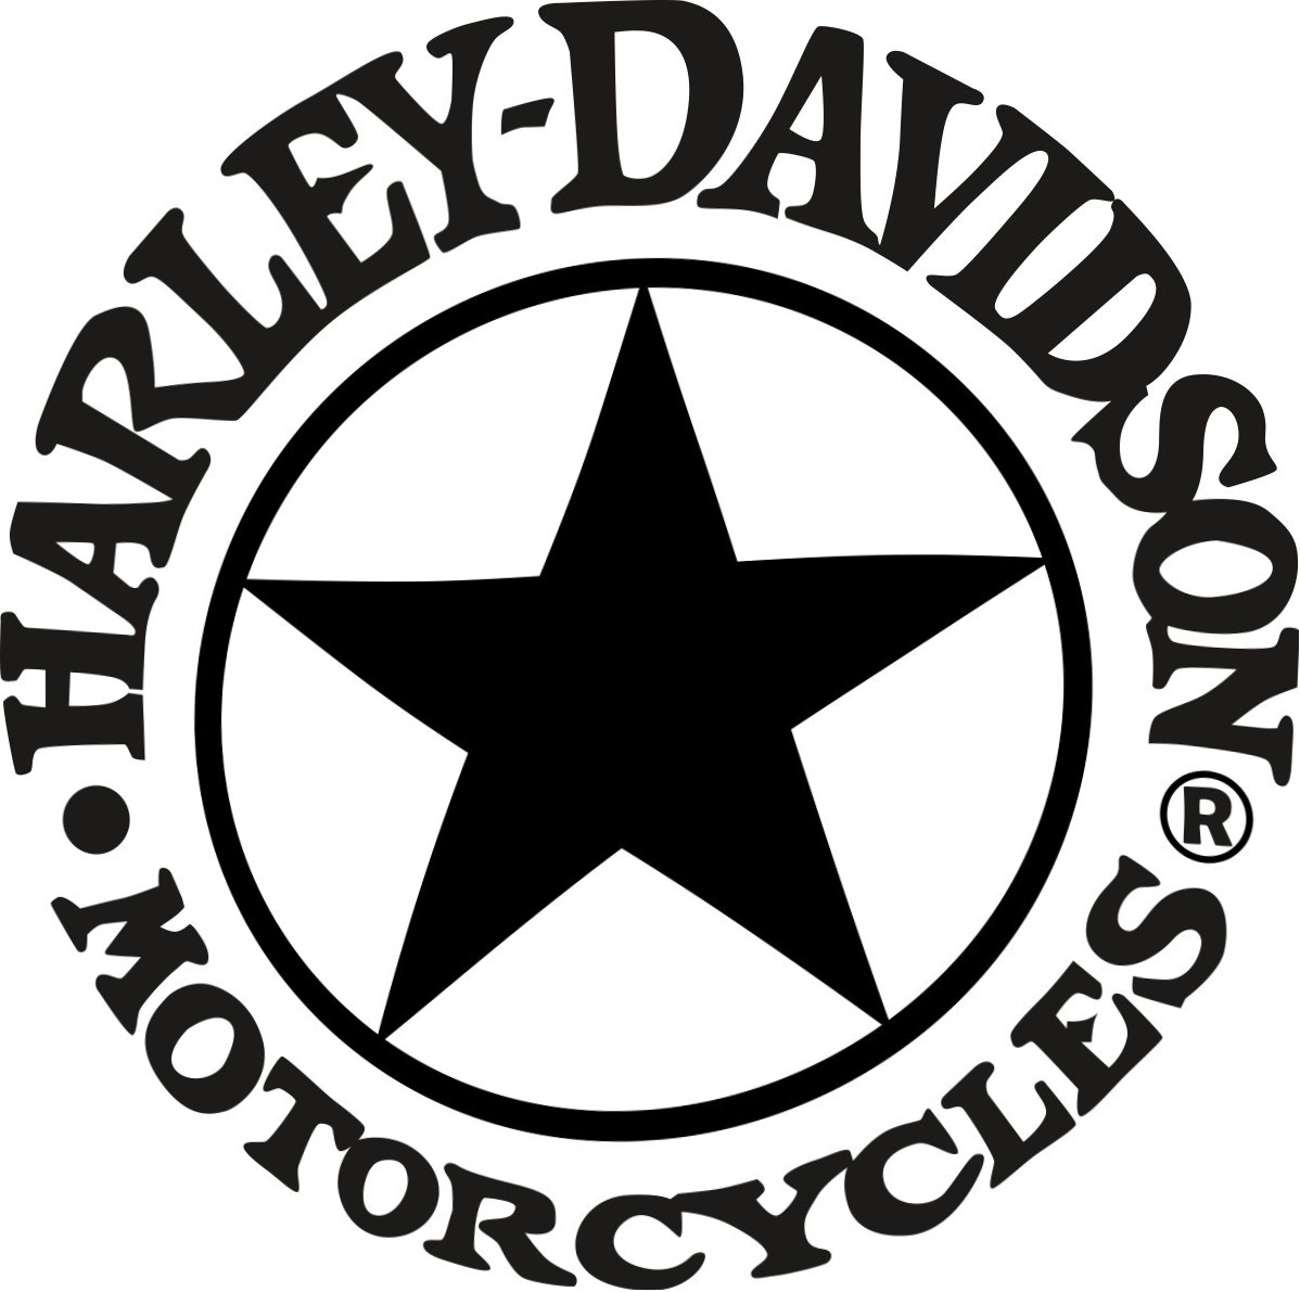 Harley Davidson Star Sticker Mxg One Best Moto Decals